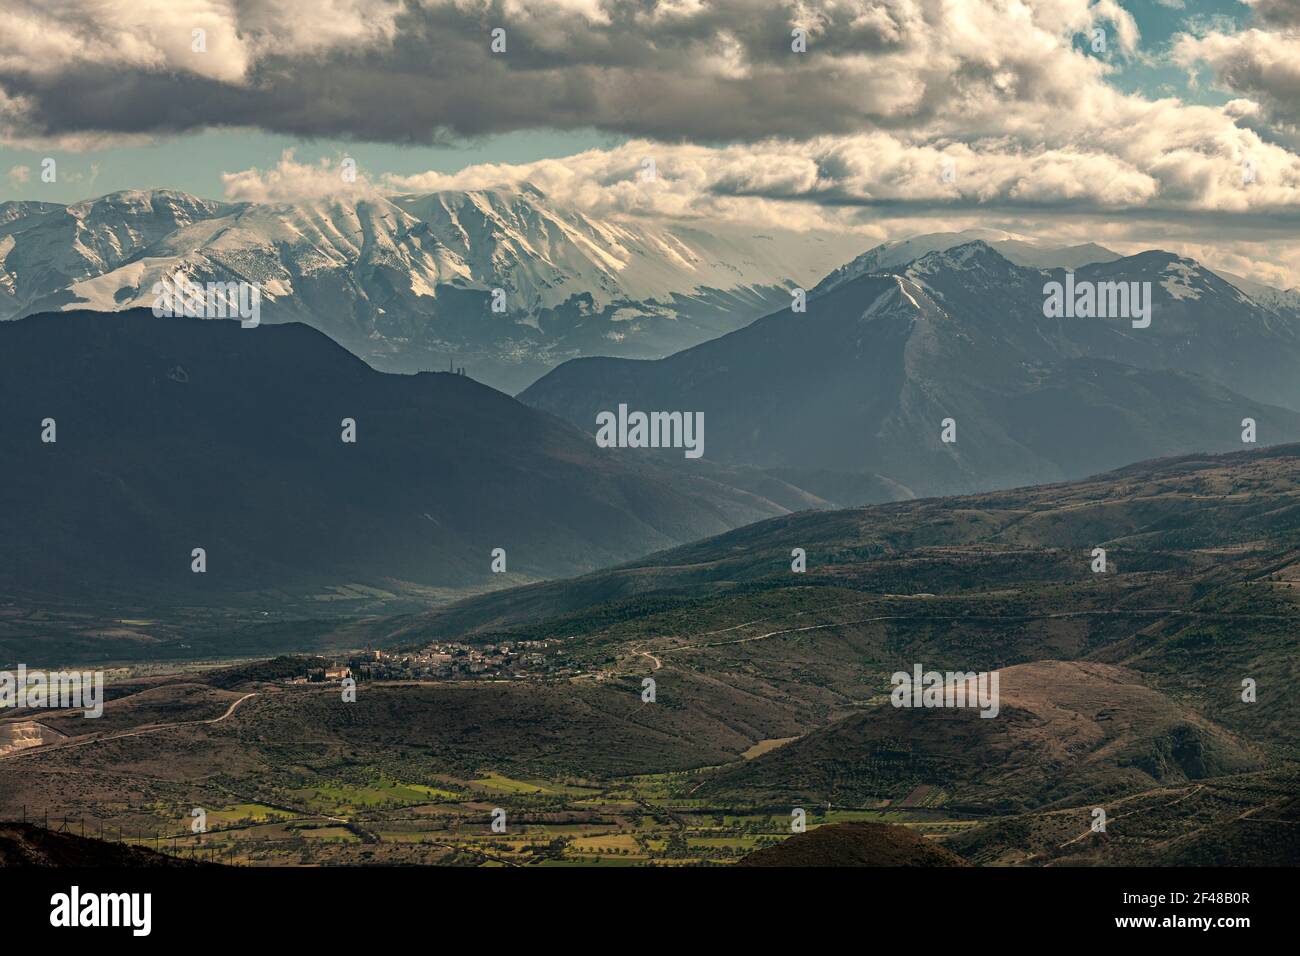 Vista dall'alto della valle del Tirino in Abruzzo. Sullo sfondo, le montagne innevate del Morrone e della Maiella. Abruzzo, Italia, Europa Foto Stock